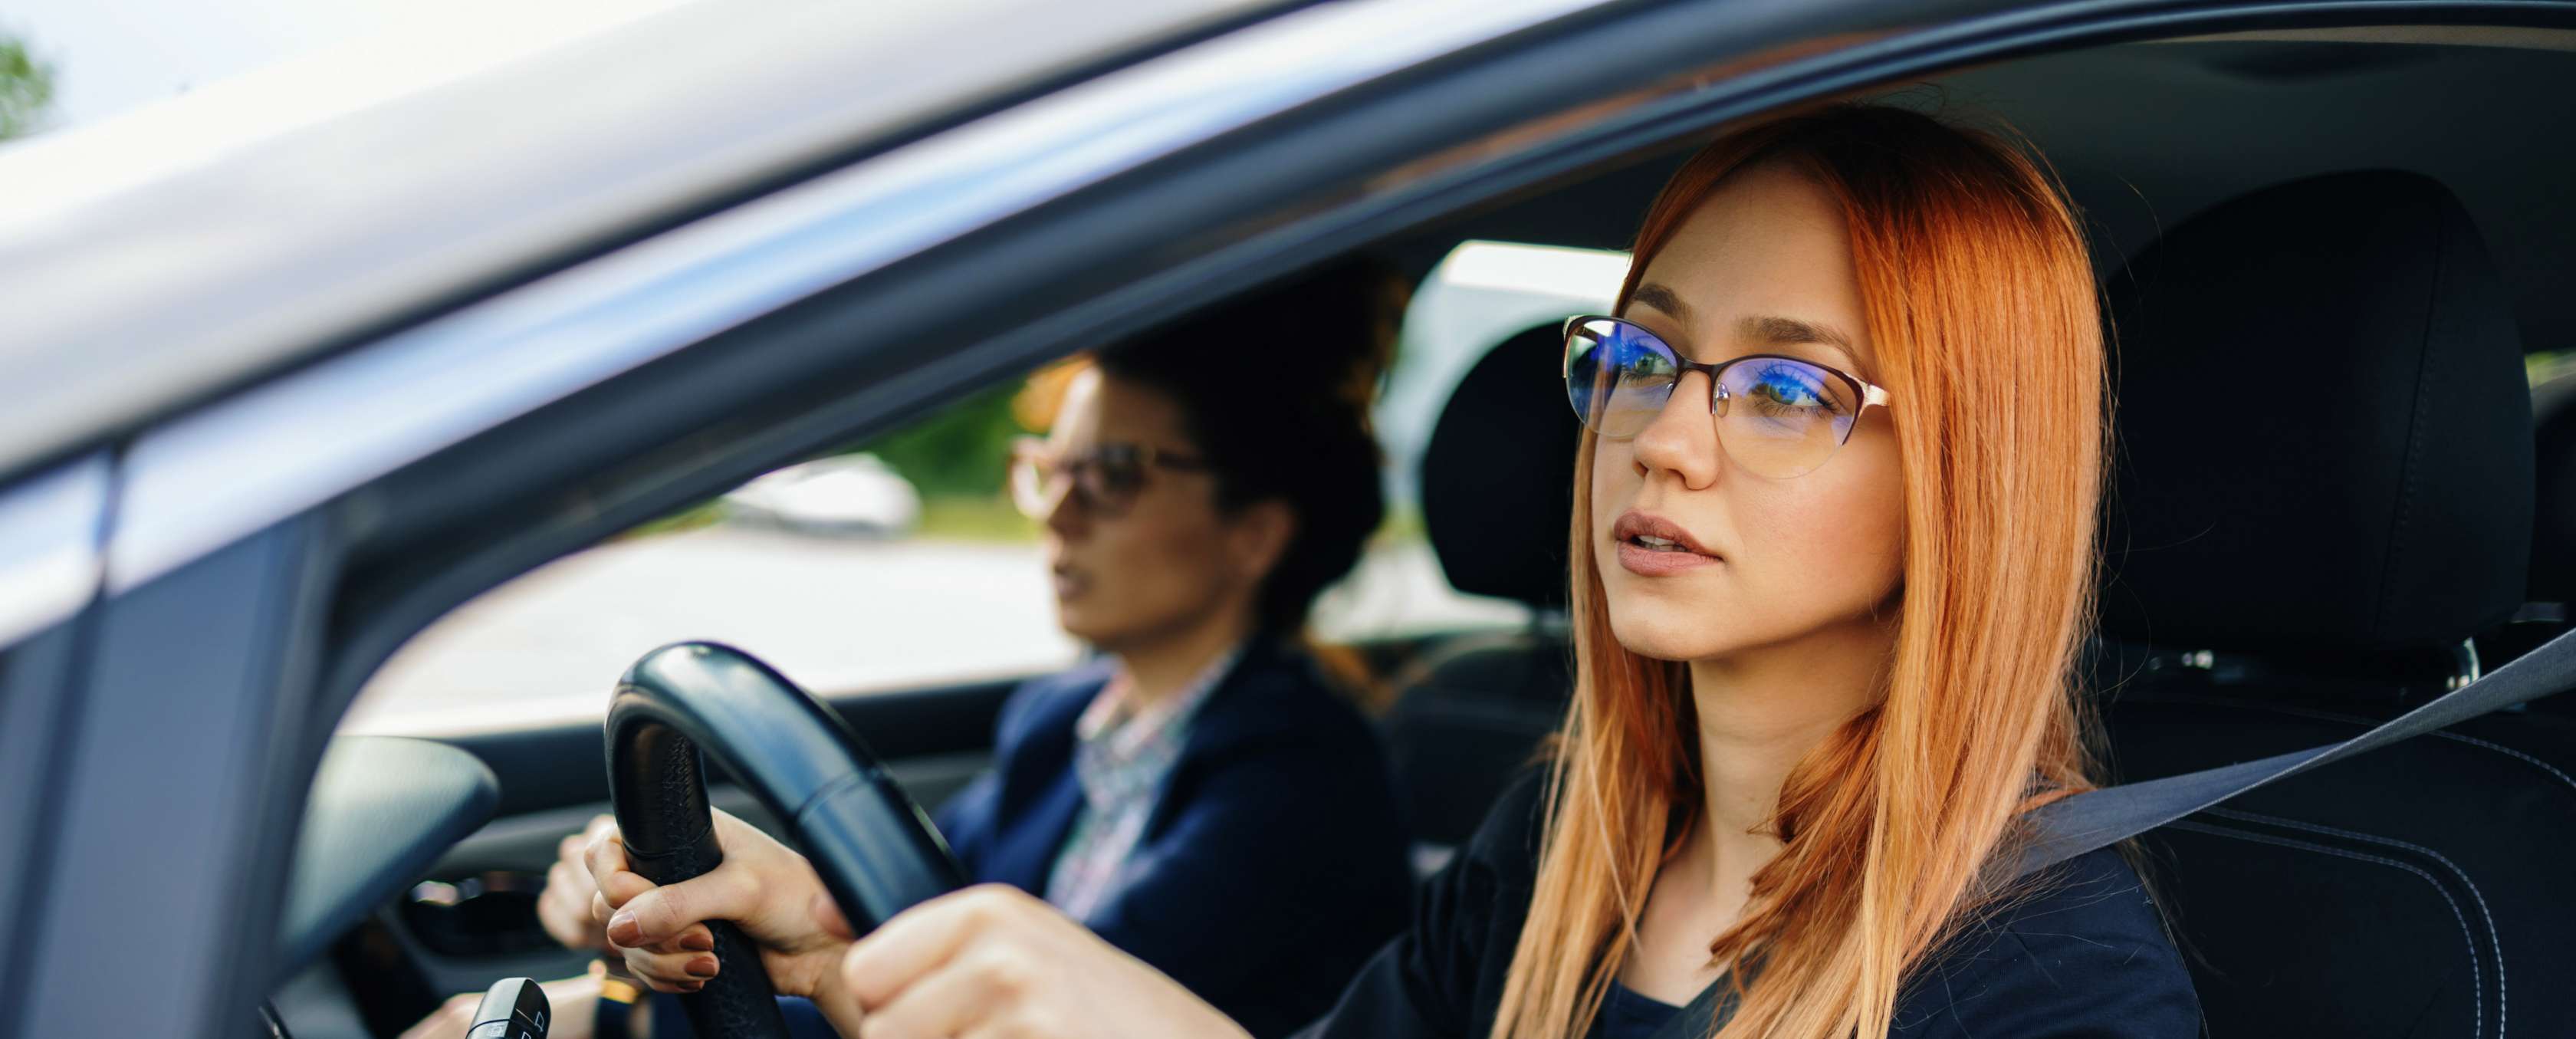 Kfz-Versicherung: So ist sie auch für Führerschein-Neulinge